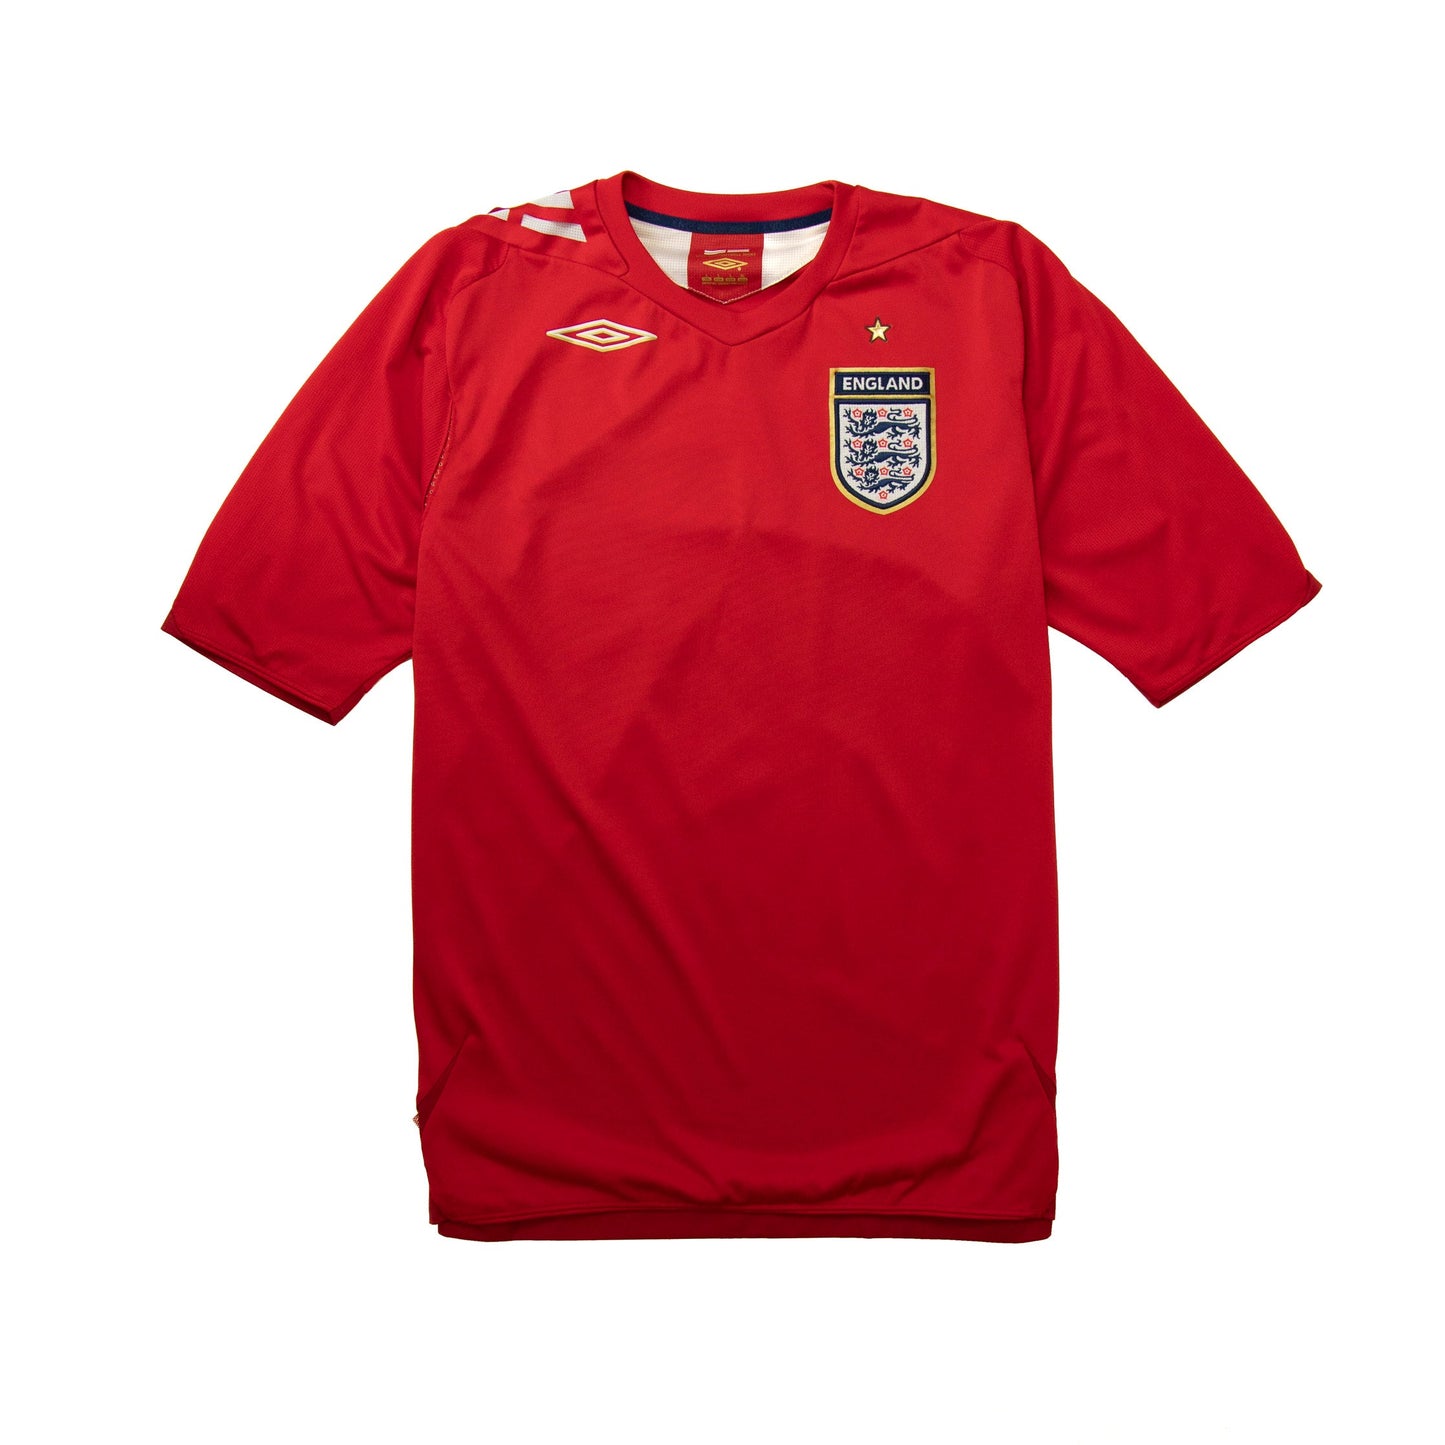 2005/06 England x Umbro Away Football Shirt